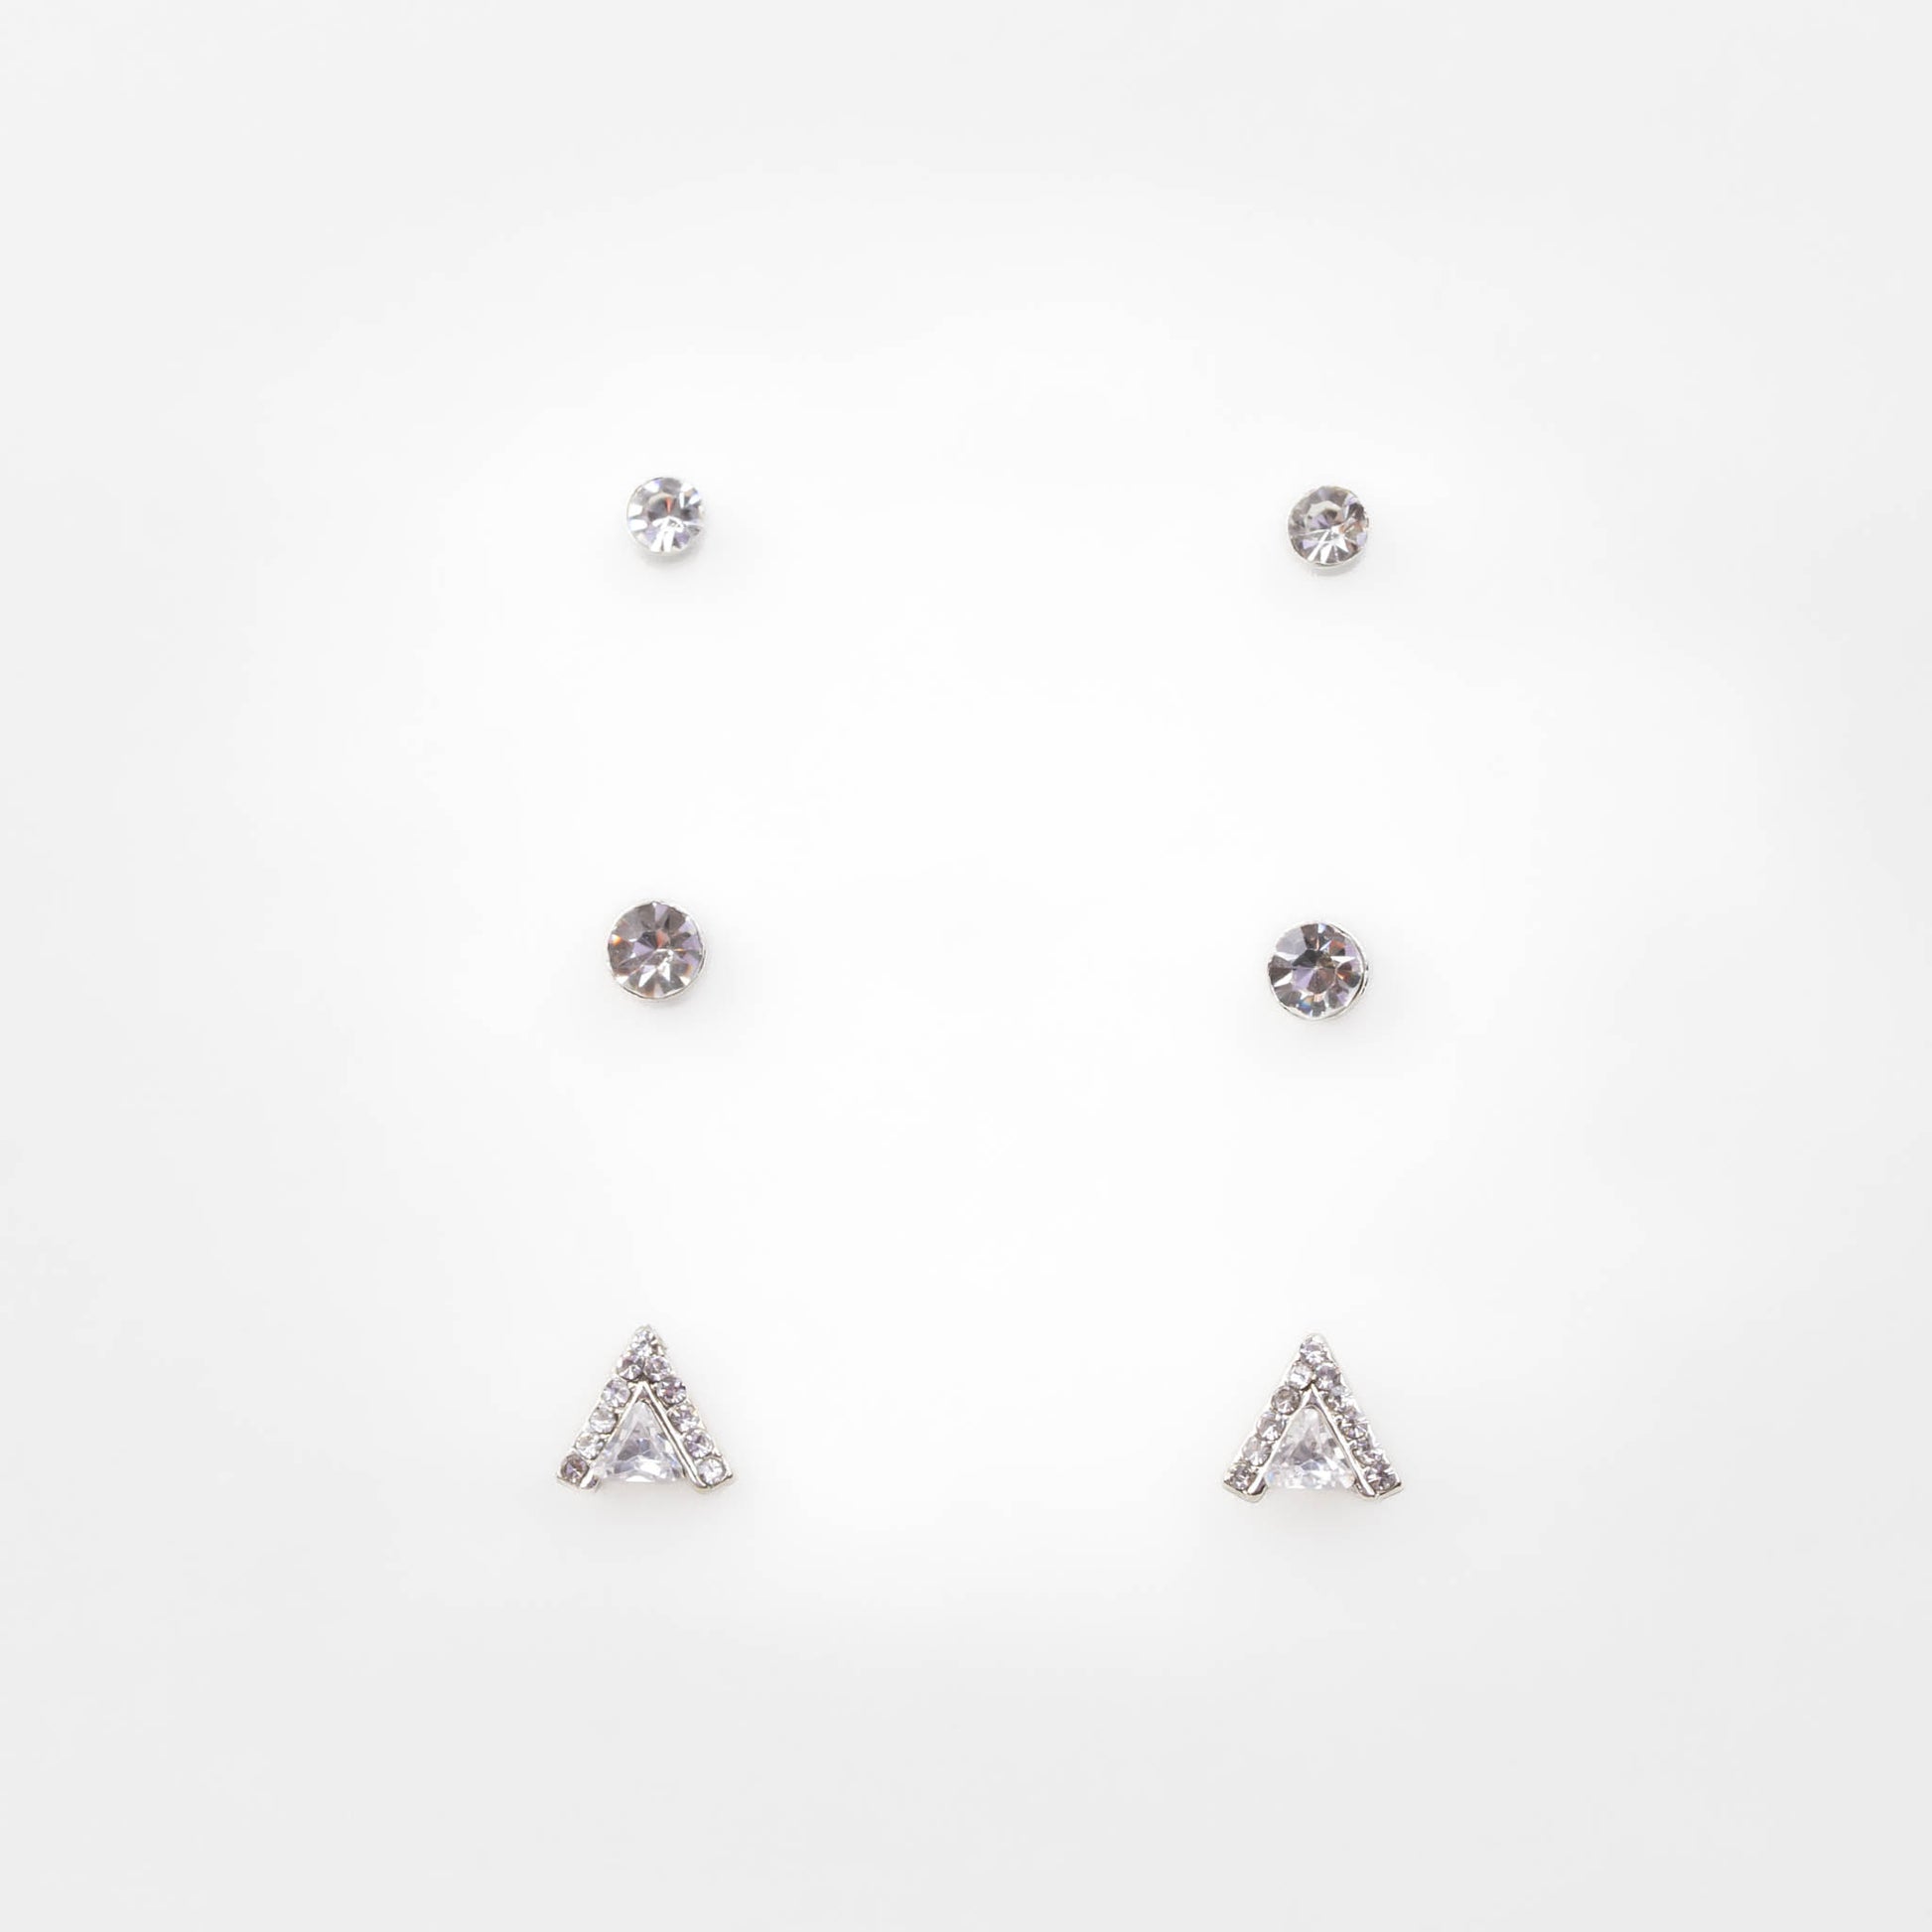 Cercei mici argintii cu triunghi și pietre strălucitoare, set 3 buc